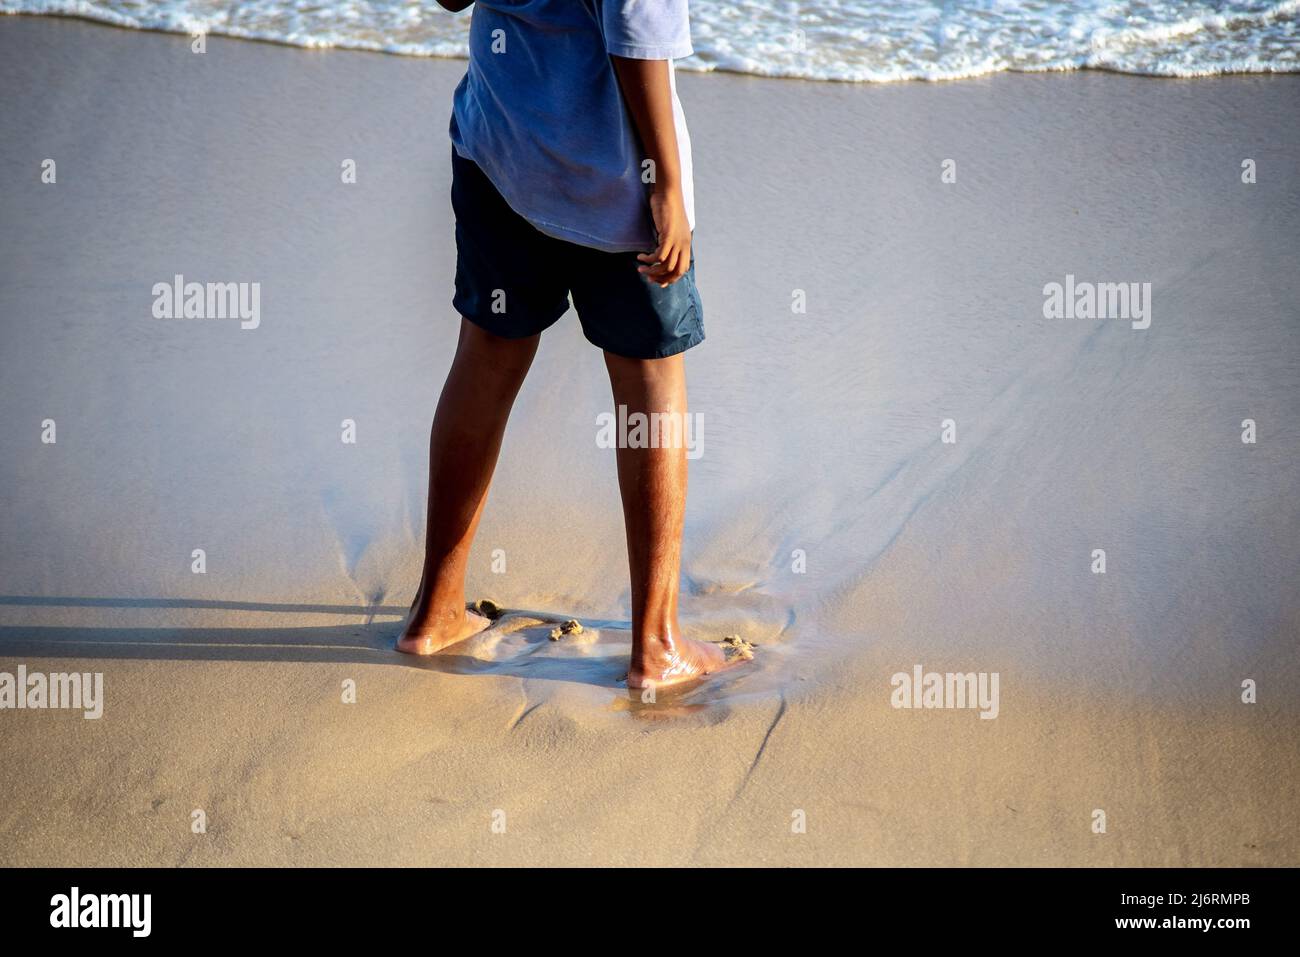 Parte inferior de una persona de pie sobre la arena de la playa. Ciudad de Salvador, estado de Bahia, Brasil. Foto de stock